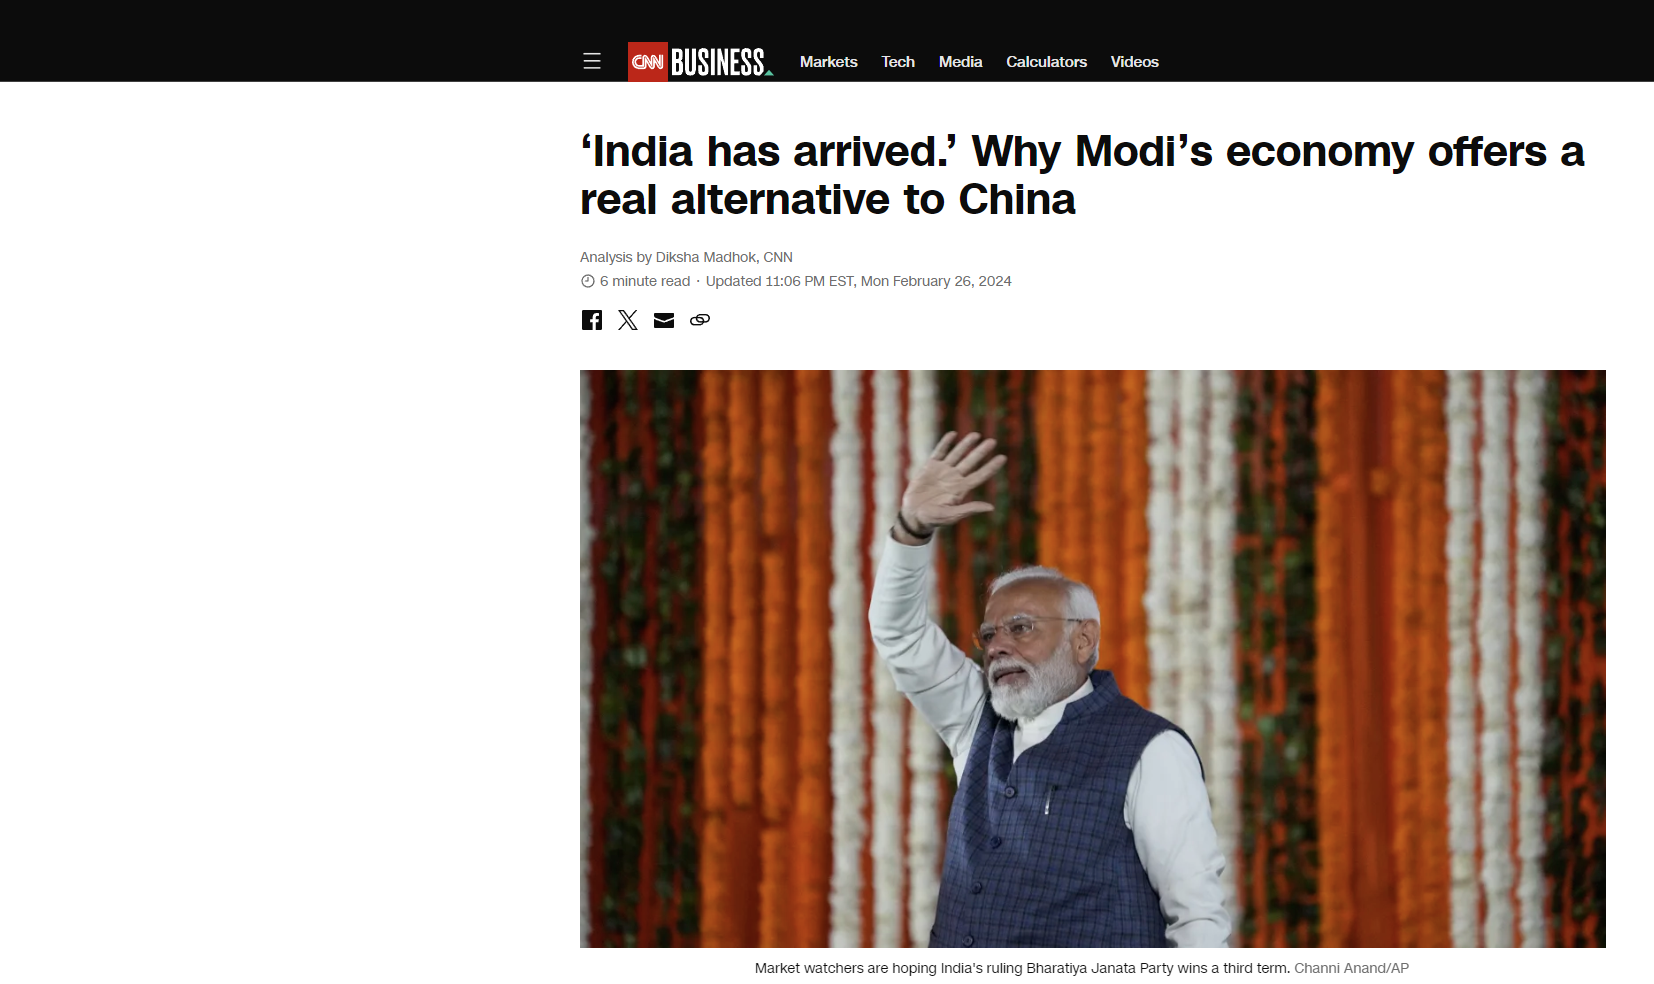 CNN: Η Ινδία έφτασε! Πως η οικονομία του Μόντι προσφέρει πραγματική εναλλακτική στην Κίνα